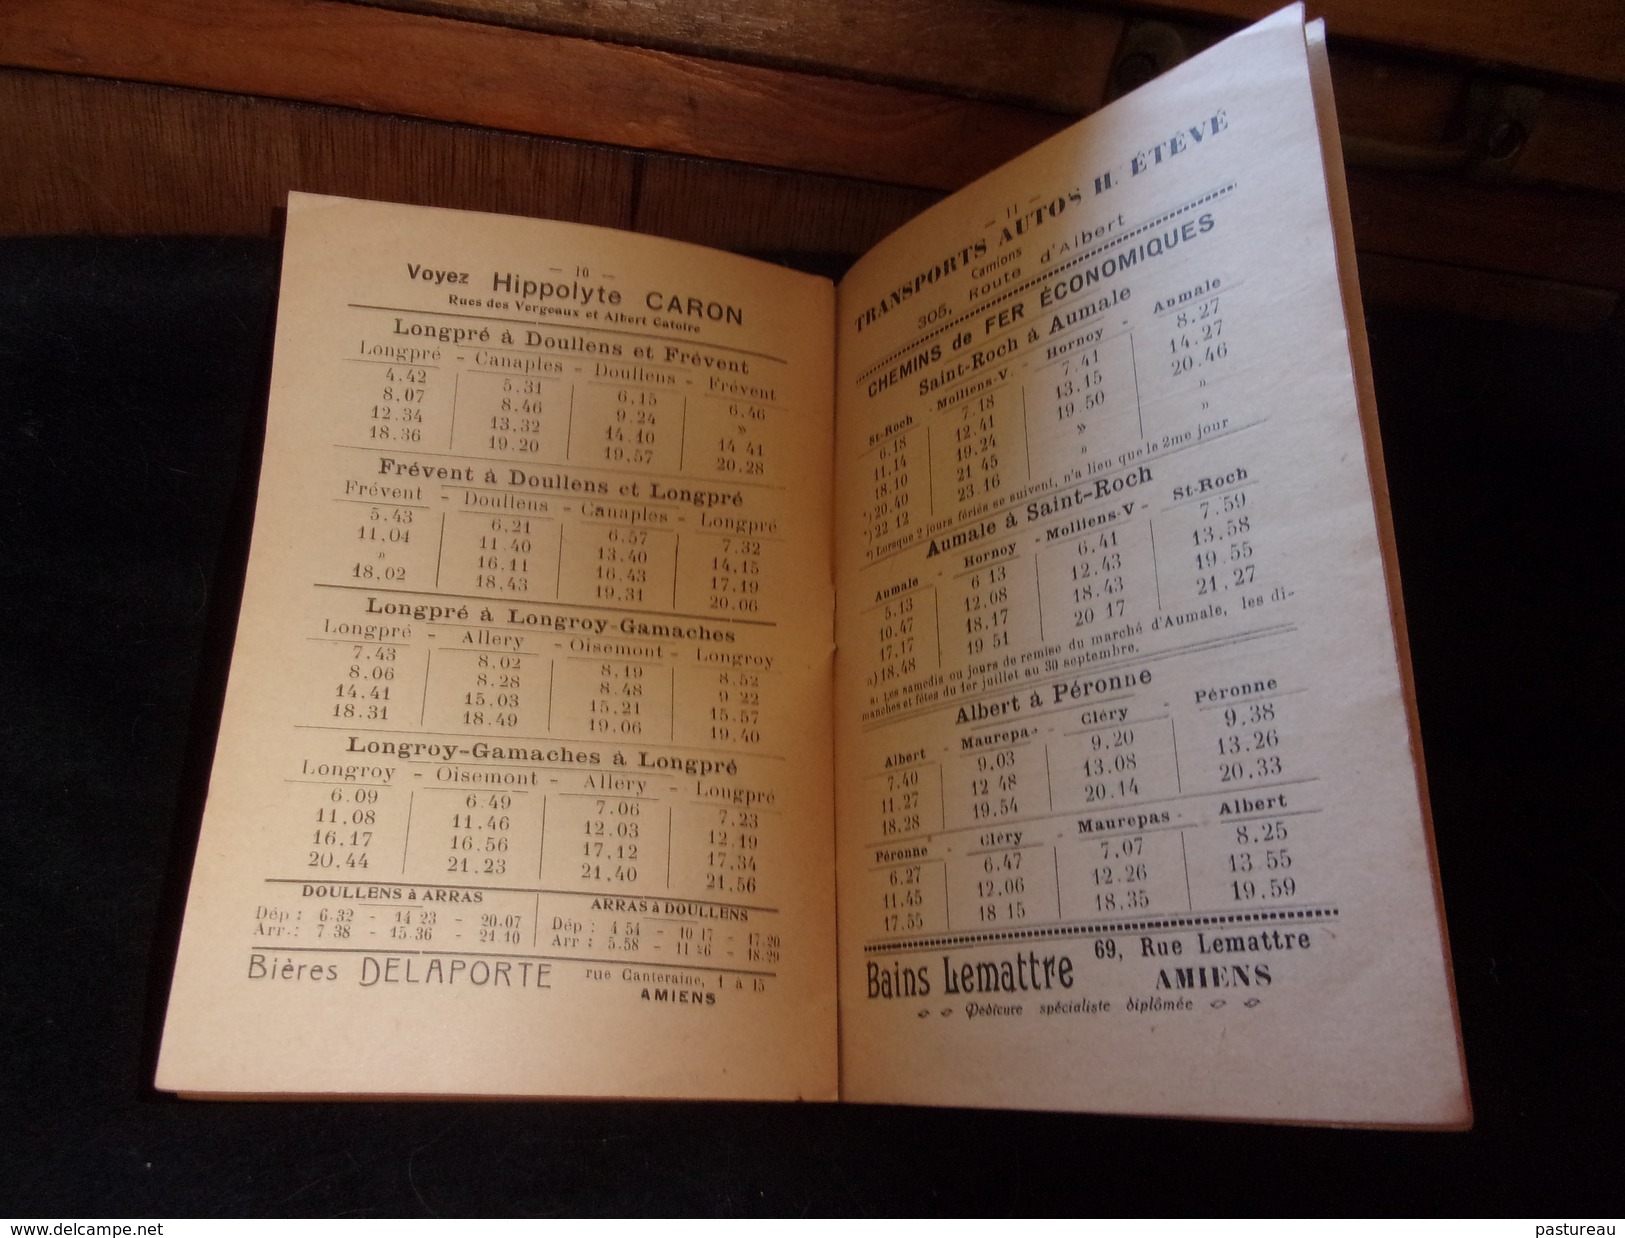 Amiens.Livret ' d ' Horaire des 2 Gares.18 Pages .1931.Nombreuses Publicités Bière Delaporte Déménagement etc.10 scans